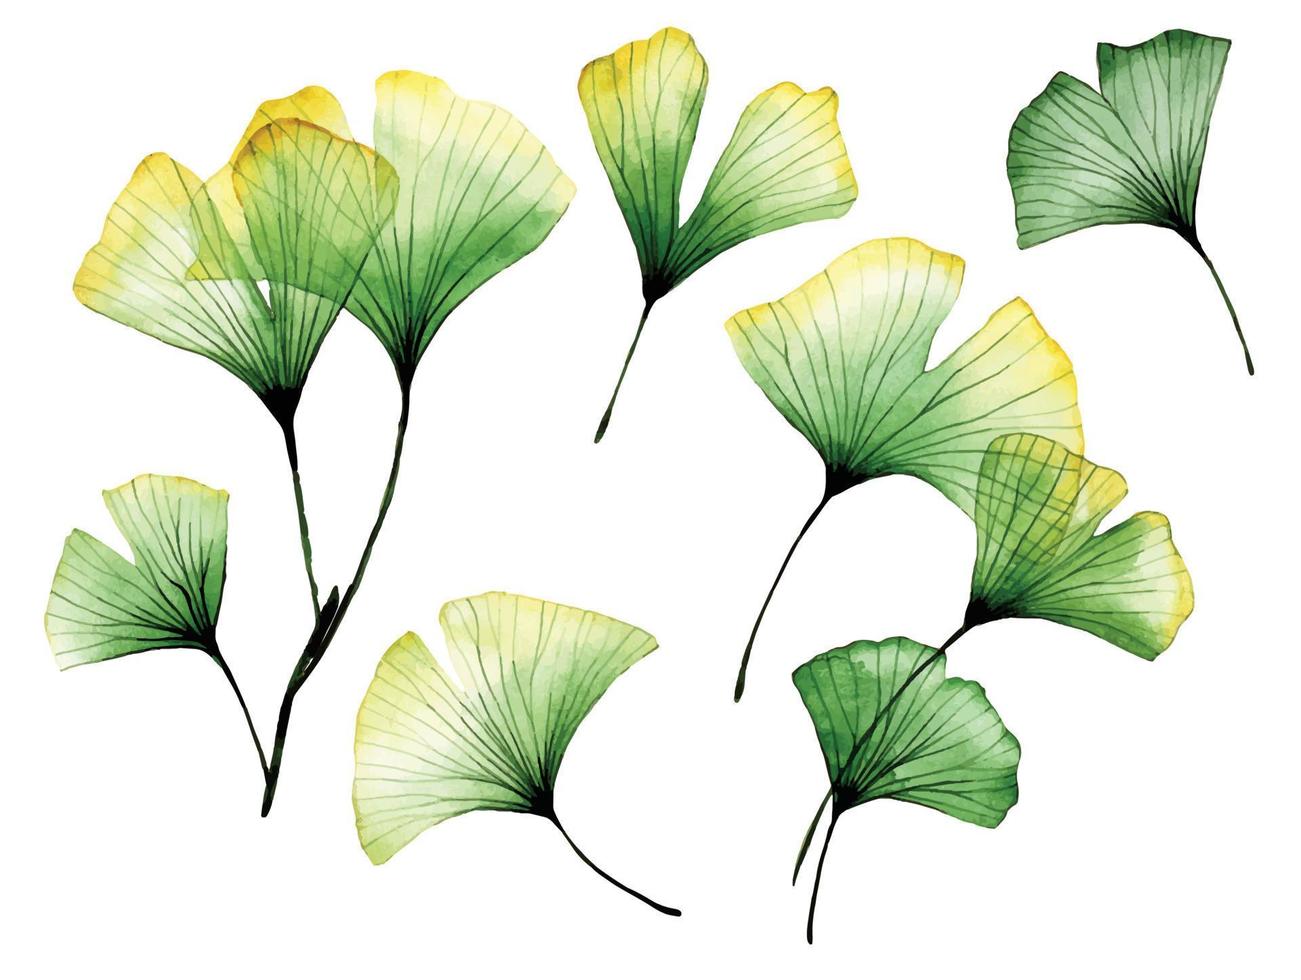 akvarellteckning. uppsättning av genomskinliga ginkgo blad. tropiska löv av ginkgoträdet. genomskinliga blommor, röntgen vektor